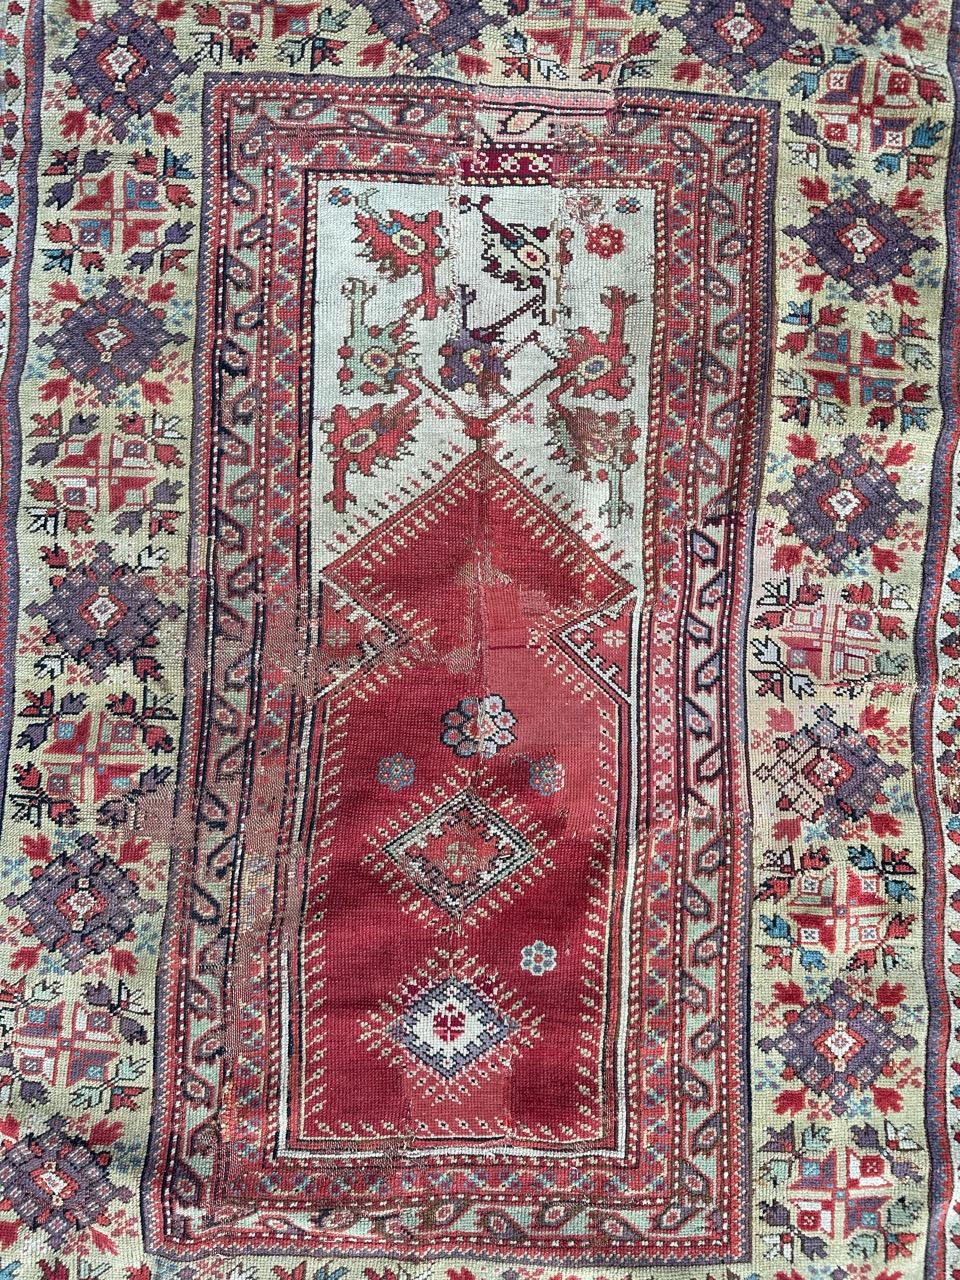 Schöner antiker türkischer Sammlerteppich, wahrscheinlich aus der ersten Hälfte des 19. Jahrhunderts, mit schönen  Mihrab-Design und schöne natürliche Farben mit rotem Feld, Weiß, Hellgrün, Lila und Schwarz. Es gibt ein paar alte Reparaturen.